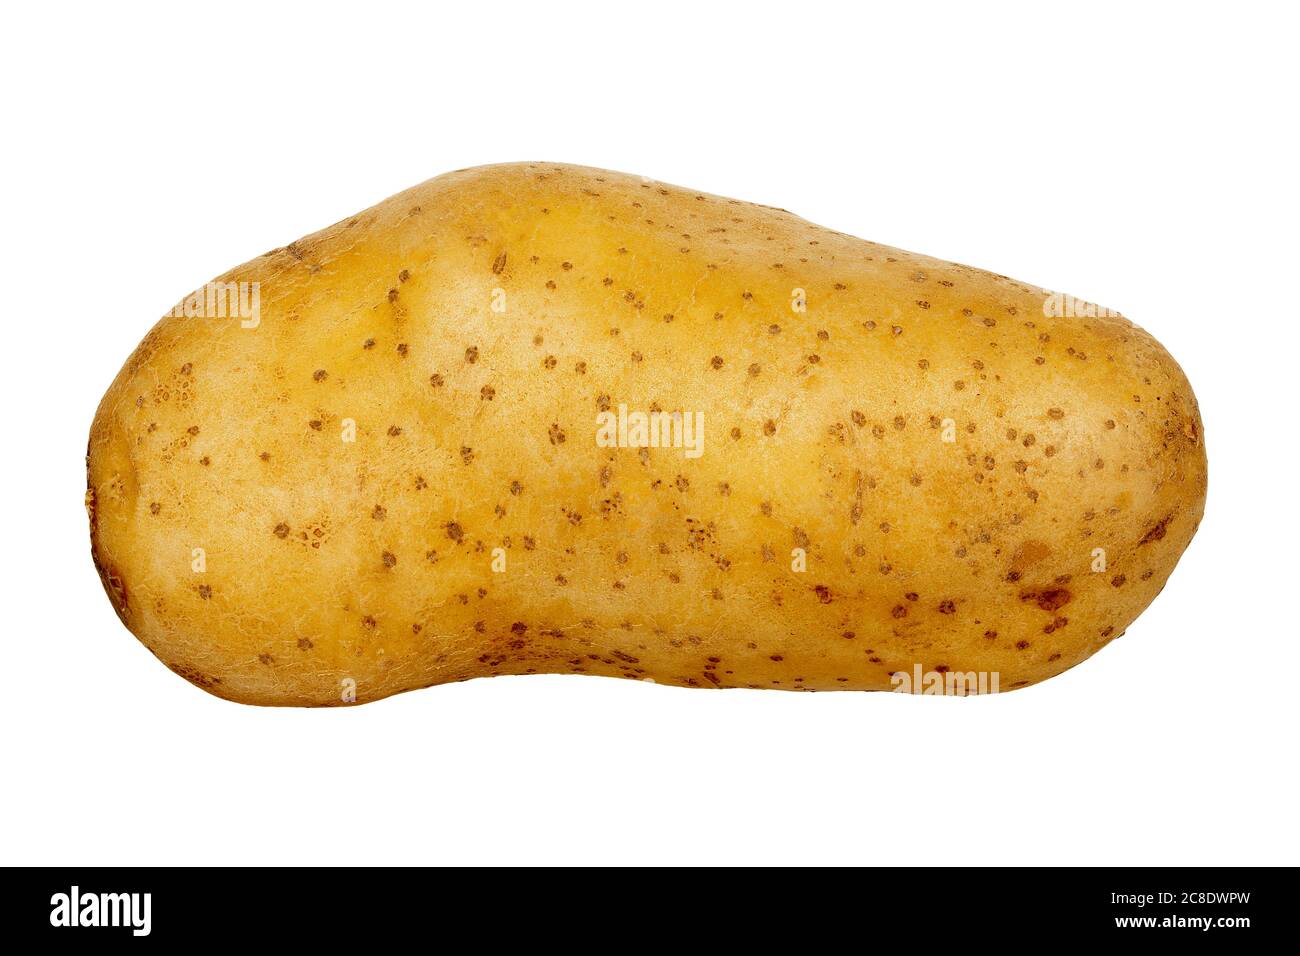 single potato isolated on white background Stock Photo